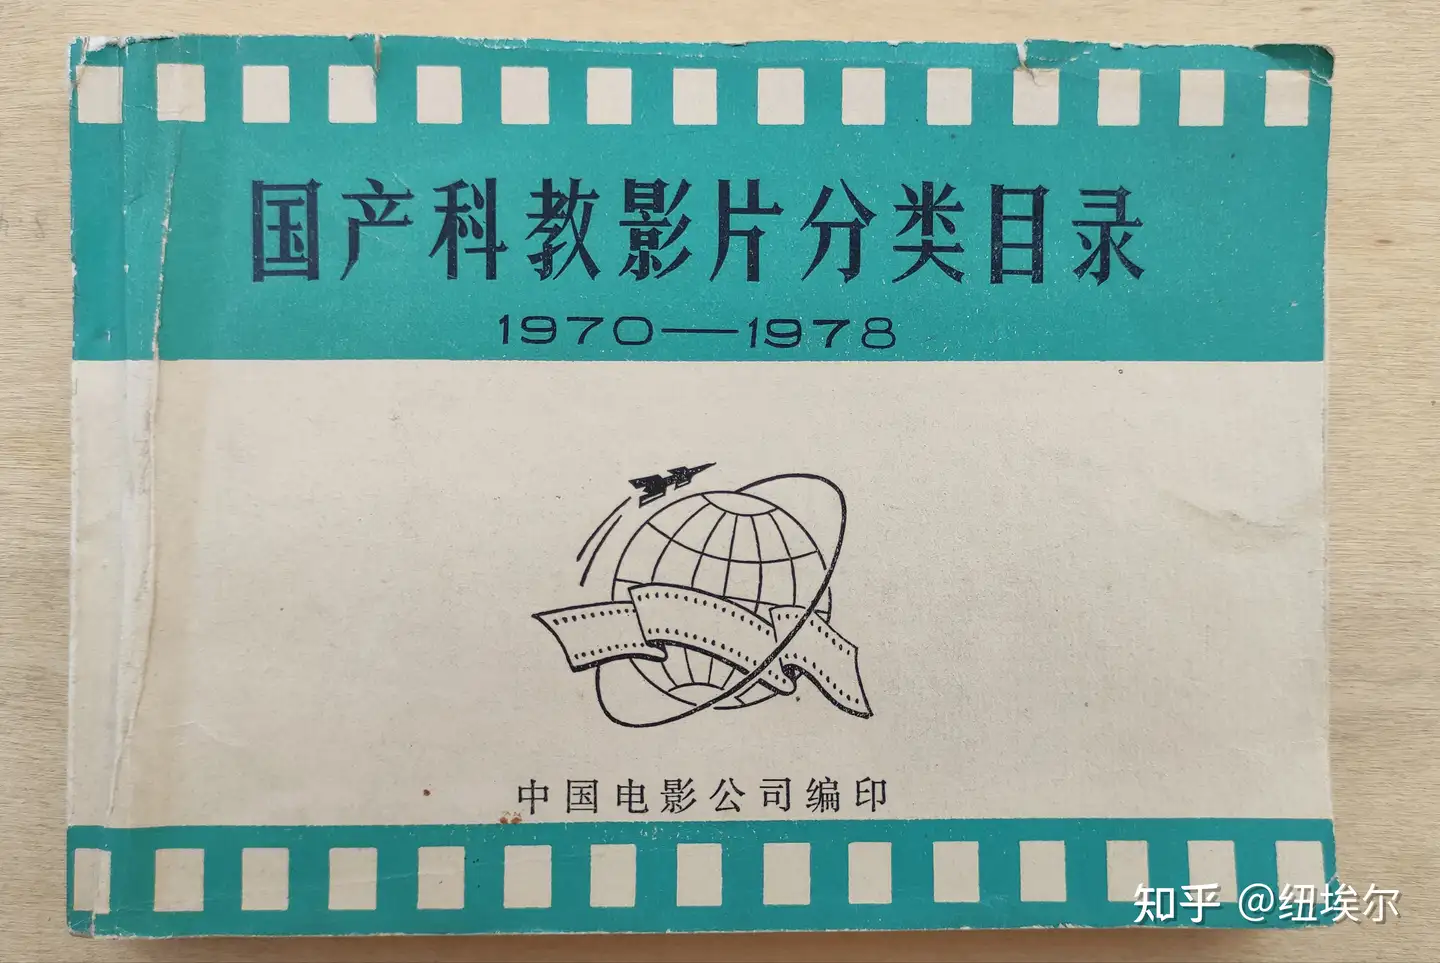 1970-1978年国产科教影片目录》到了- 知乎